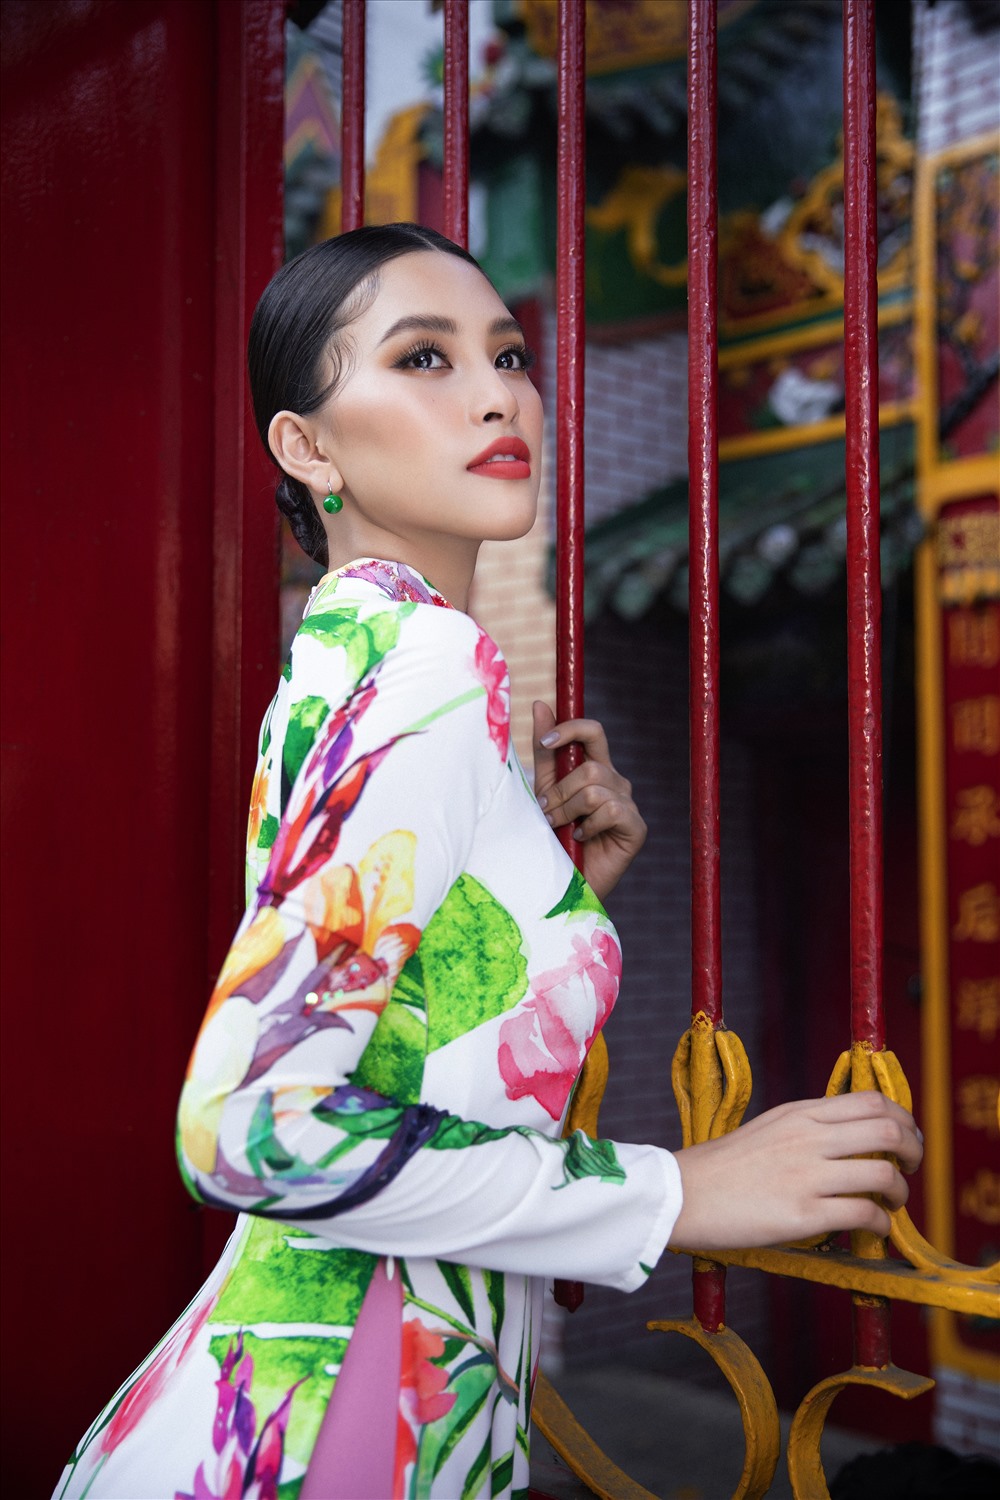 Với danh hiệu Hoa hậu Việt Nam 2018, Tiểu Vy đã thực hiện những việc làm ý nghĩa góp ích cho cộng đồng và những hành động nhân ái giúp đỡ những người gặp khó khăn trên nhiều tỉnh thành. Ảnh: Lê Thiện Viễn.